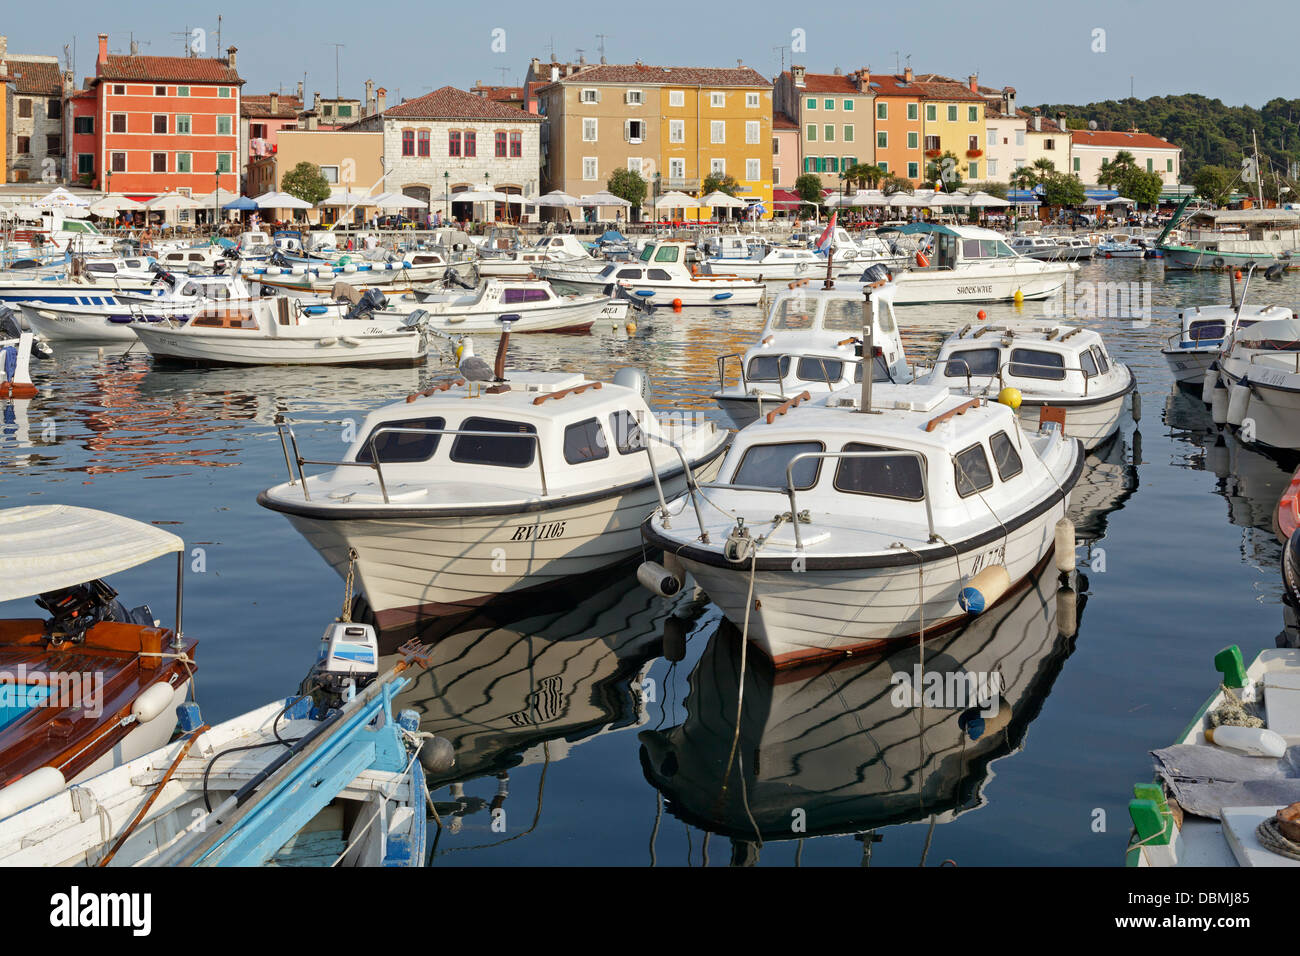 marina, Rovinj, Istria, Croatia Stock Photo